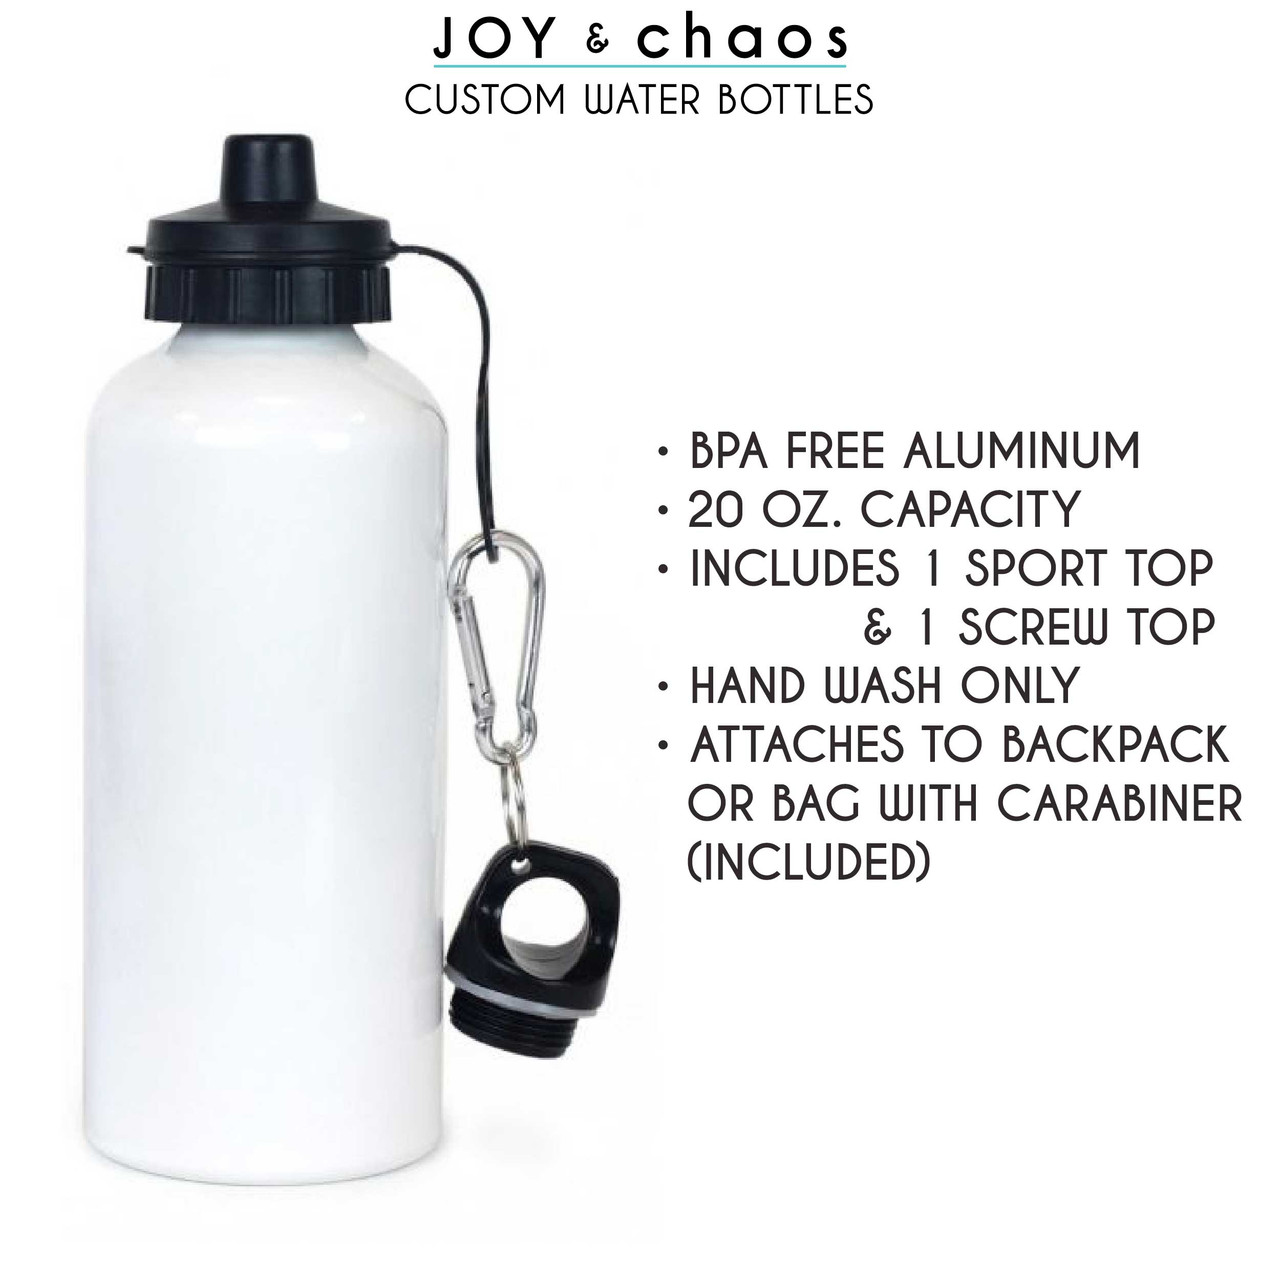 20 oz. Custom Water Bottles - Aluminum Water Bottles